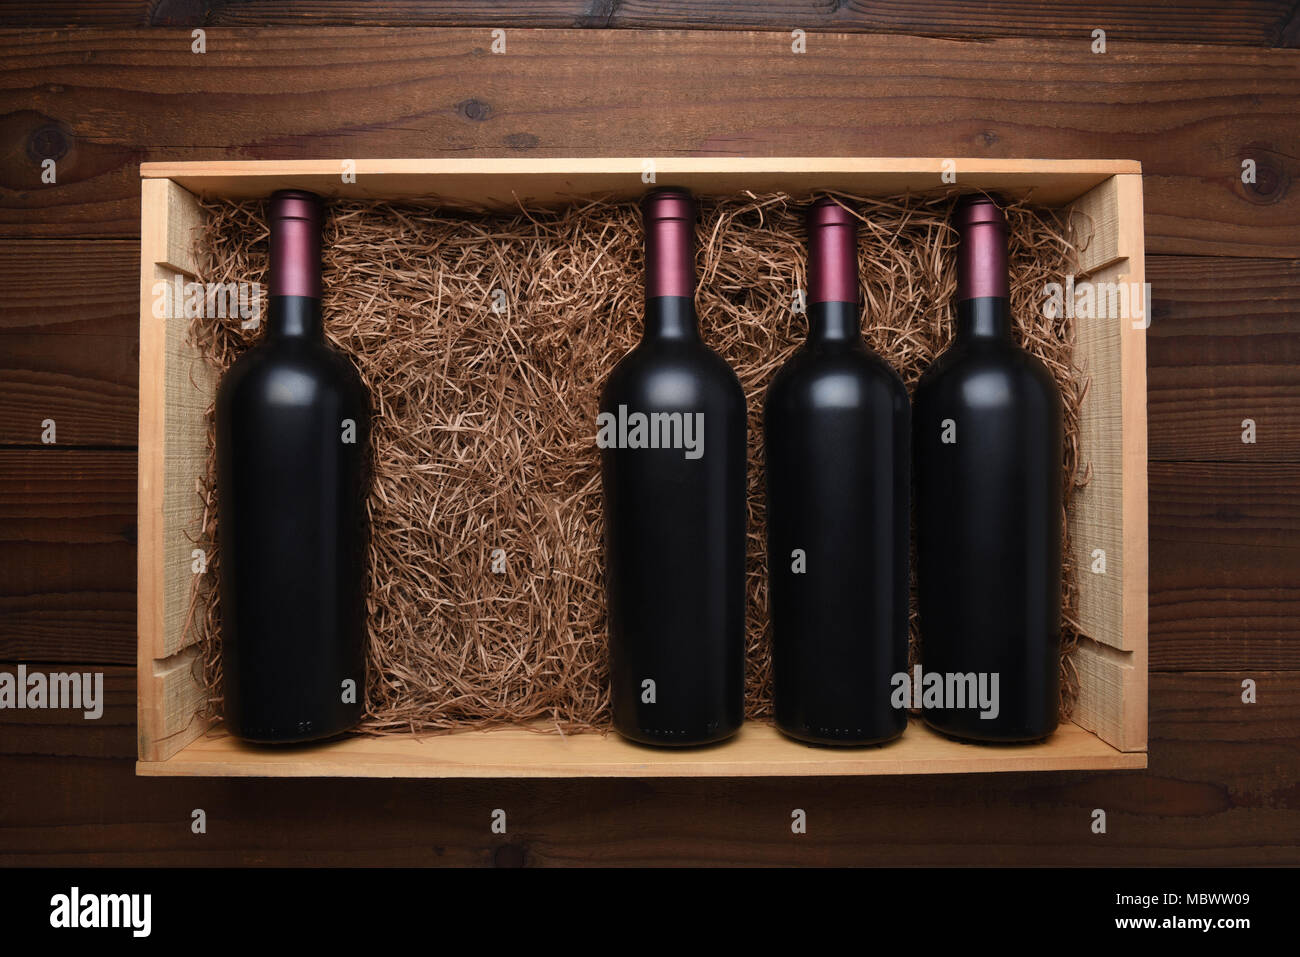 Caso di vino rosso: vista dall'alto di una scatola di legno di bottiglie di vino rosso con una bottiglia mancante, il caso è riempito con paglia di imballaggio. Foto Stock